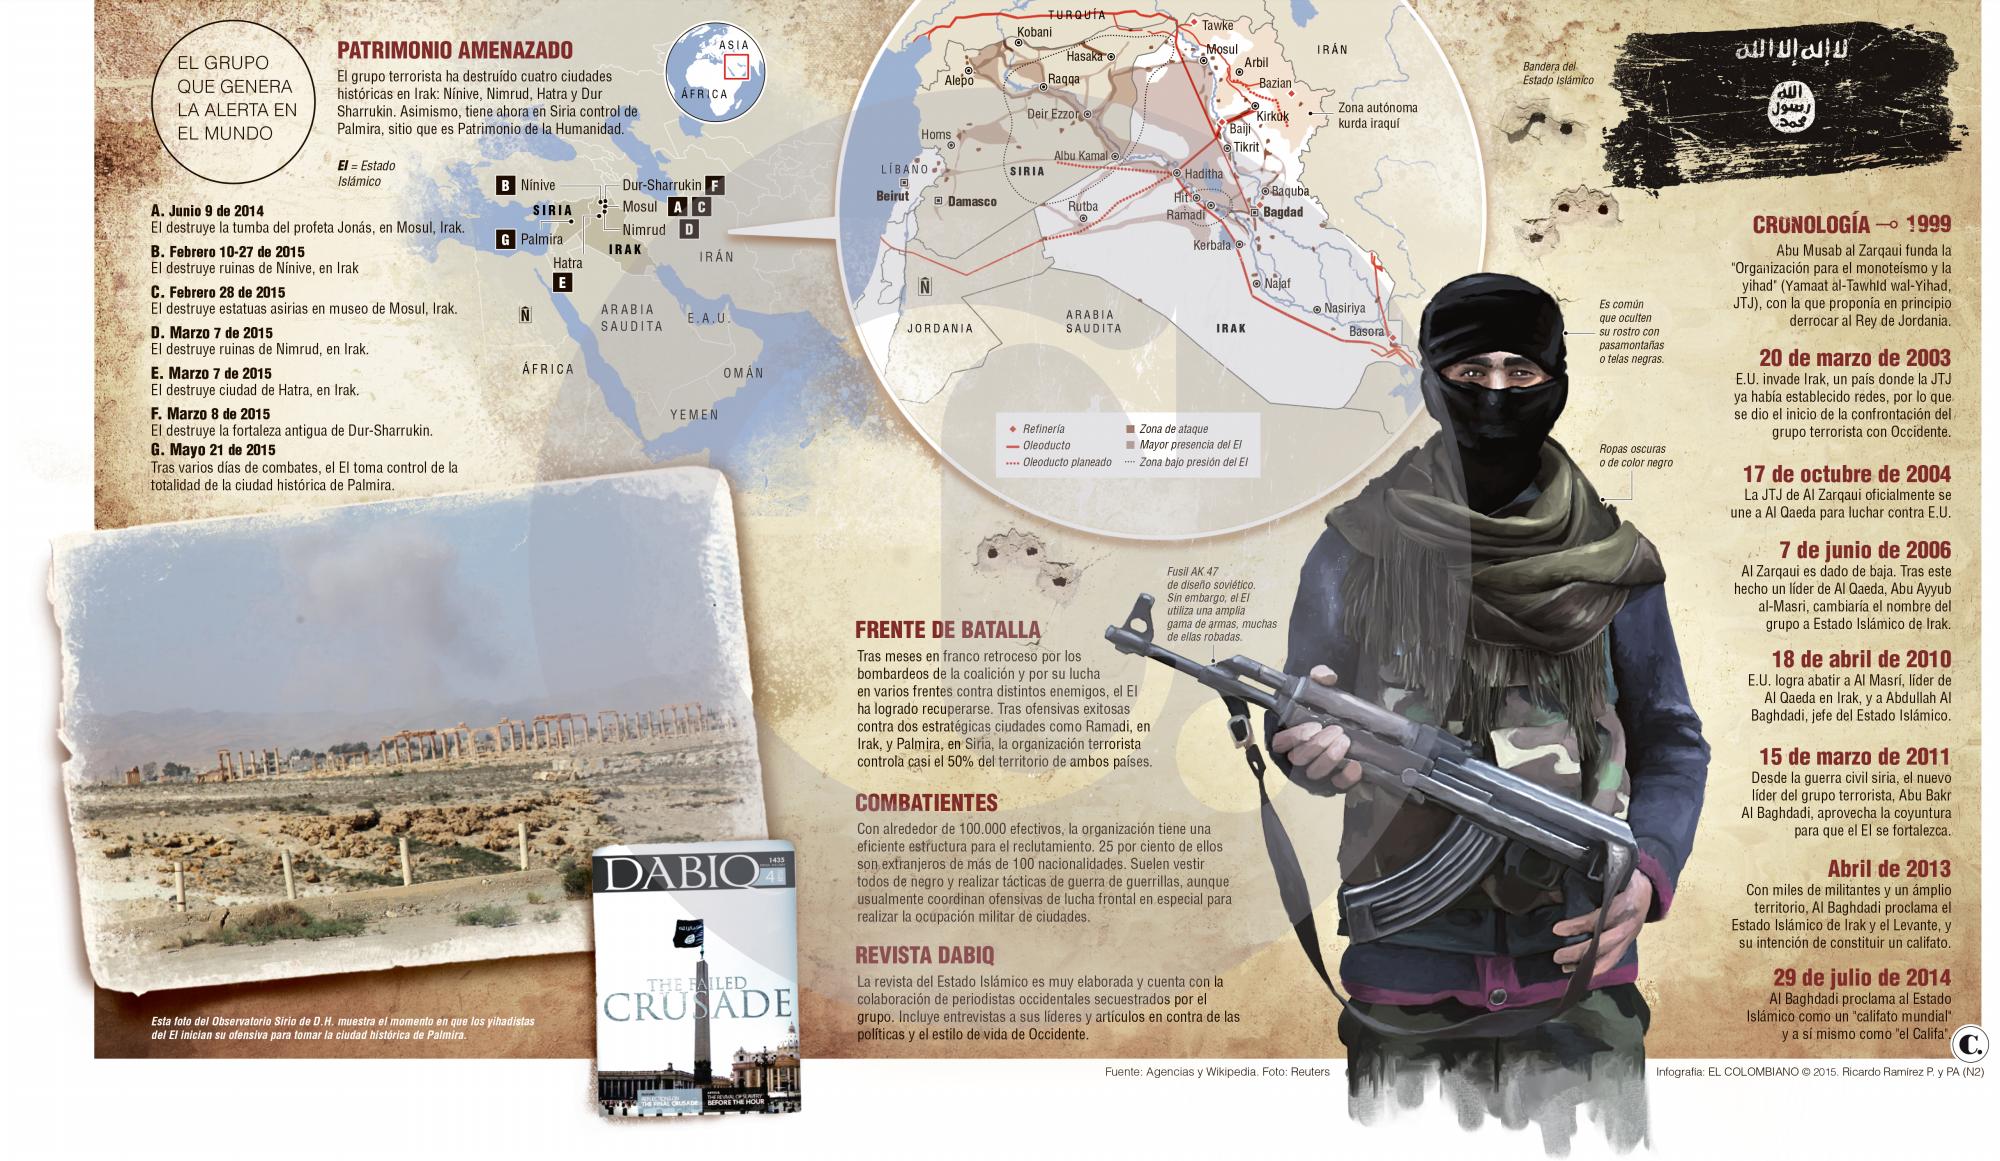 El Estado Islámico, un desafío militar para la civilización actual